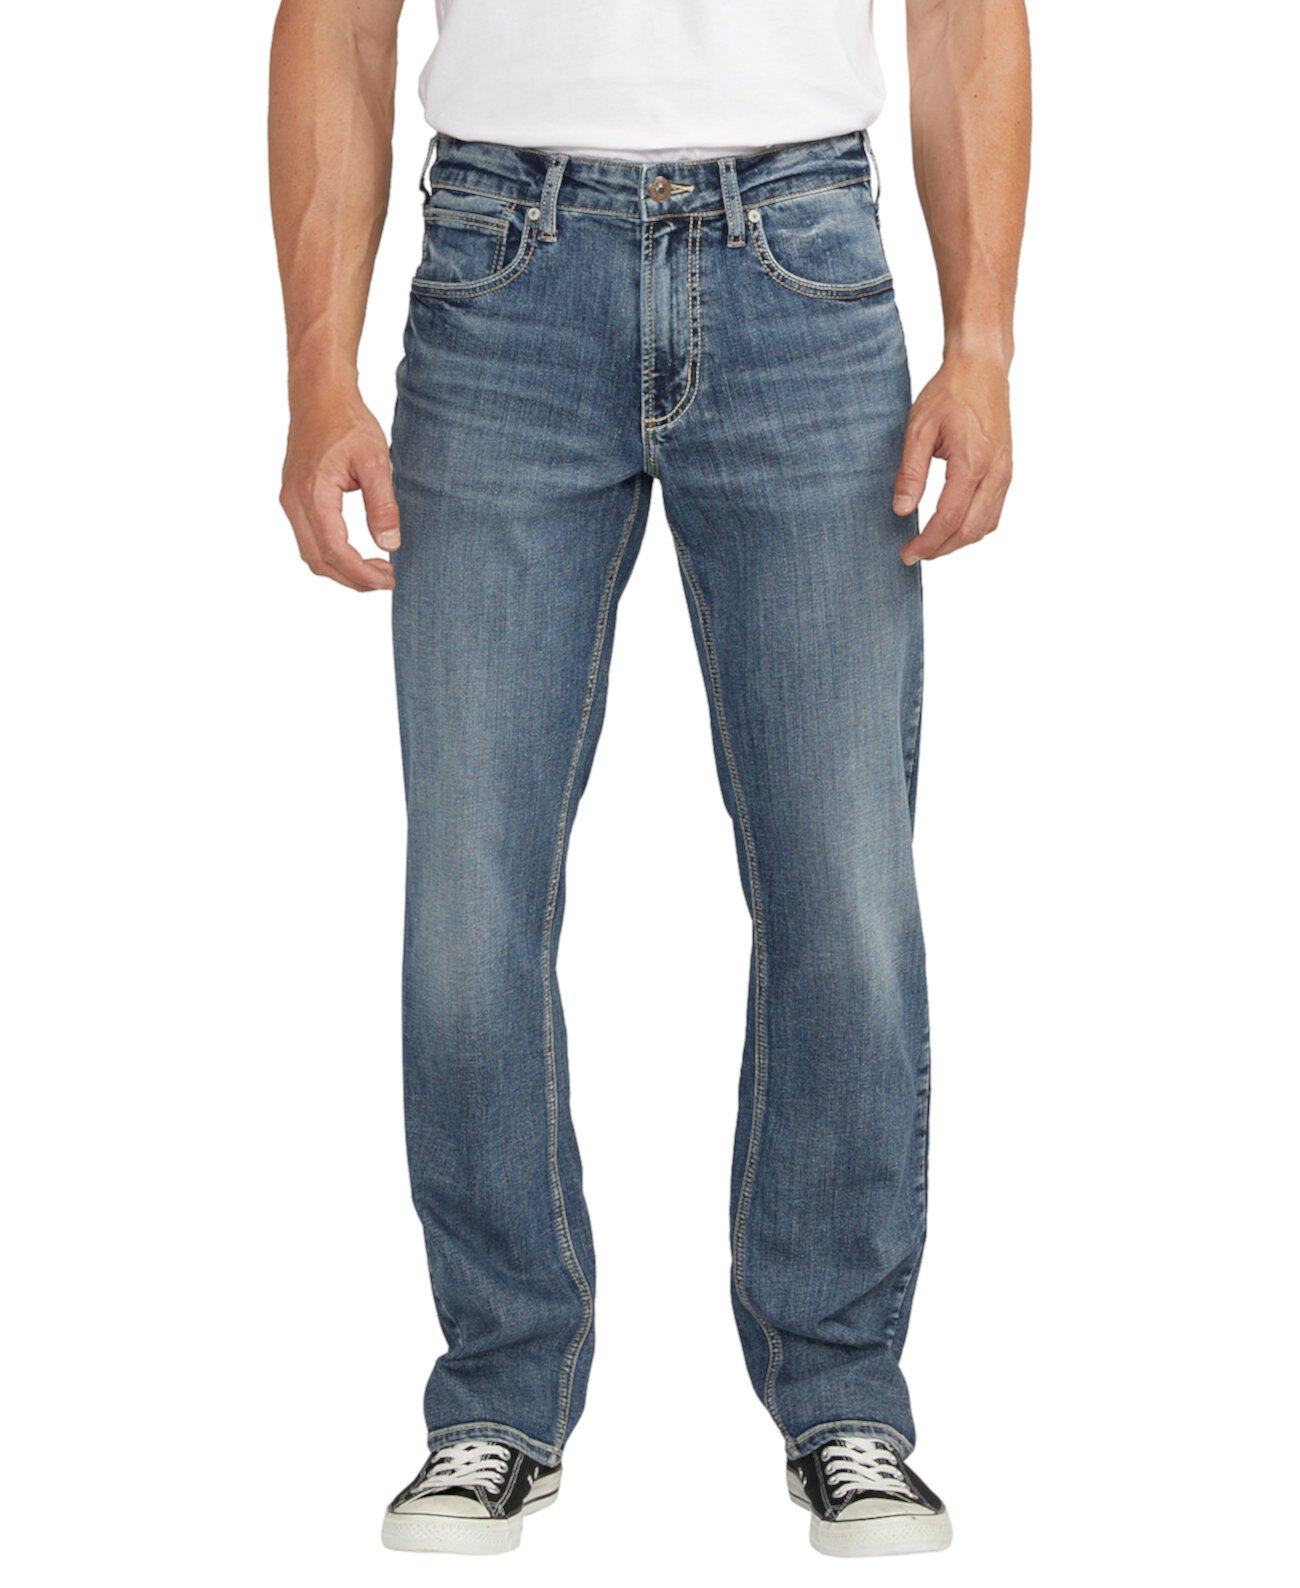 Мужские джинсы прямого кроя классического кроя Grayson Silver Jeans Co.